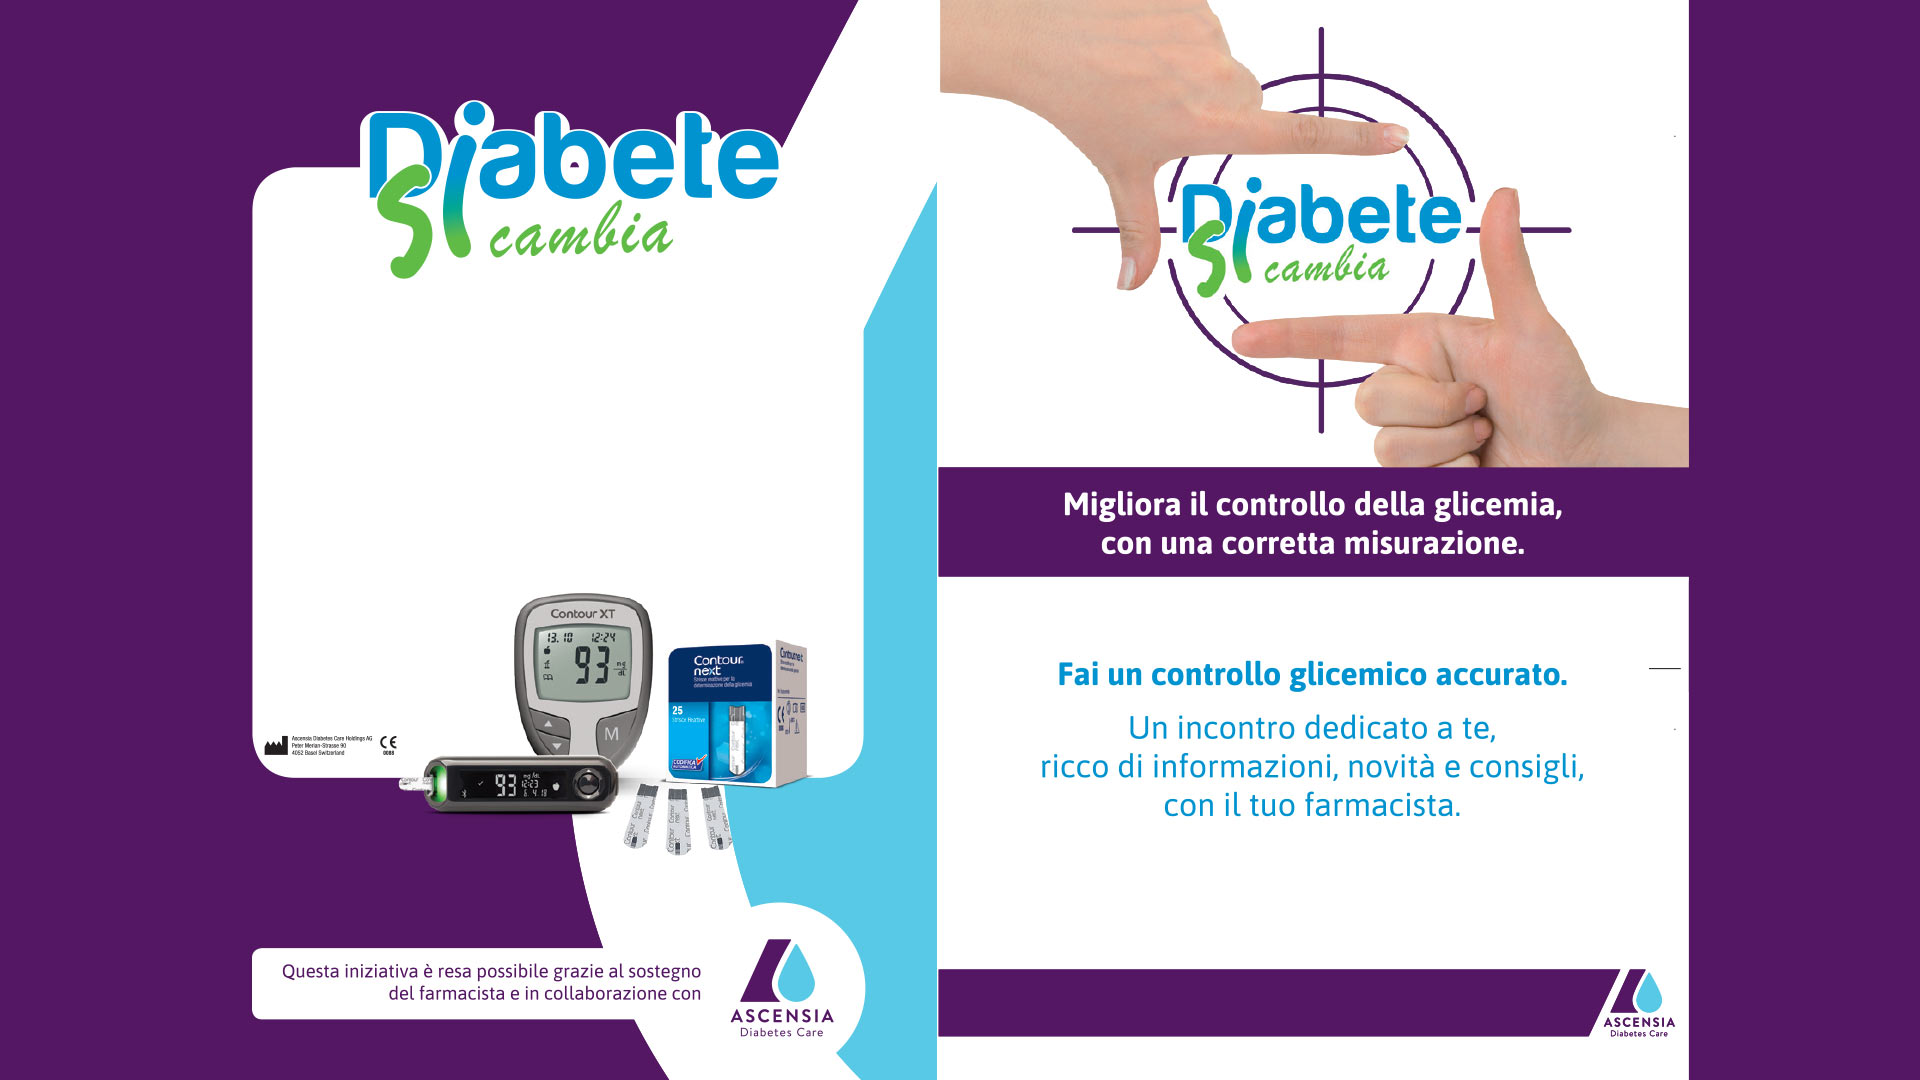 Diabete si cambia - Farmacia Barbagallo Edvige